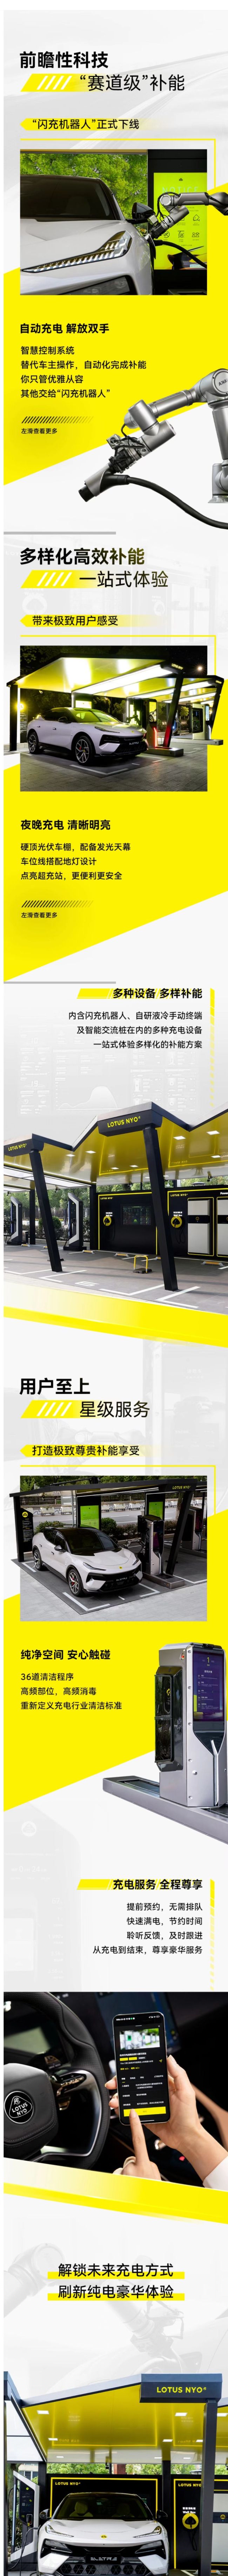 路特斯全球首座智慧光储充机器人超充站在杭州落地启动